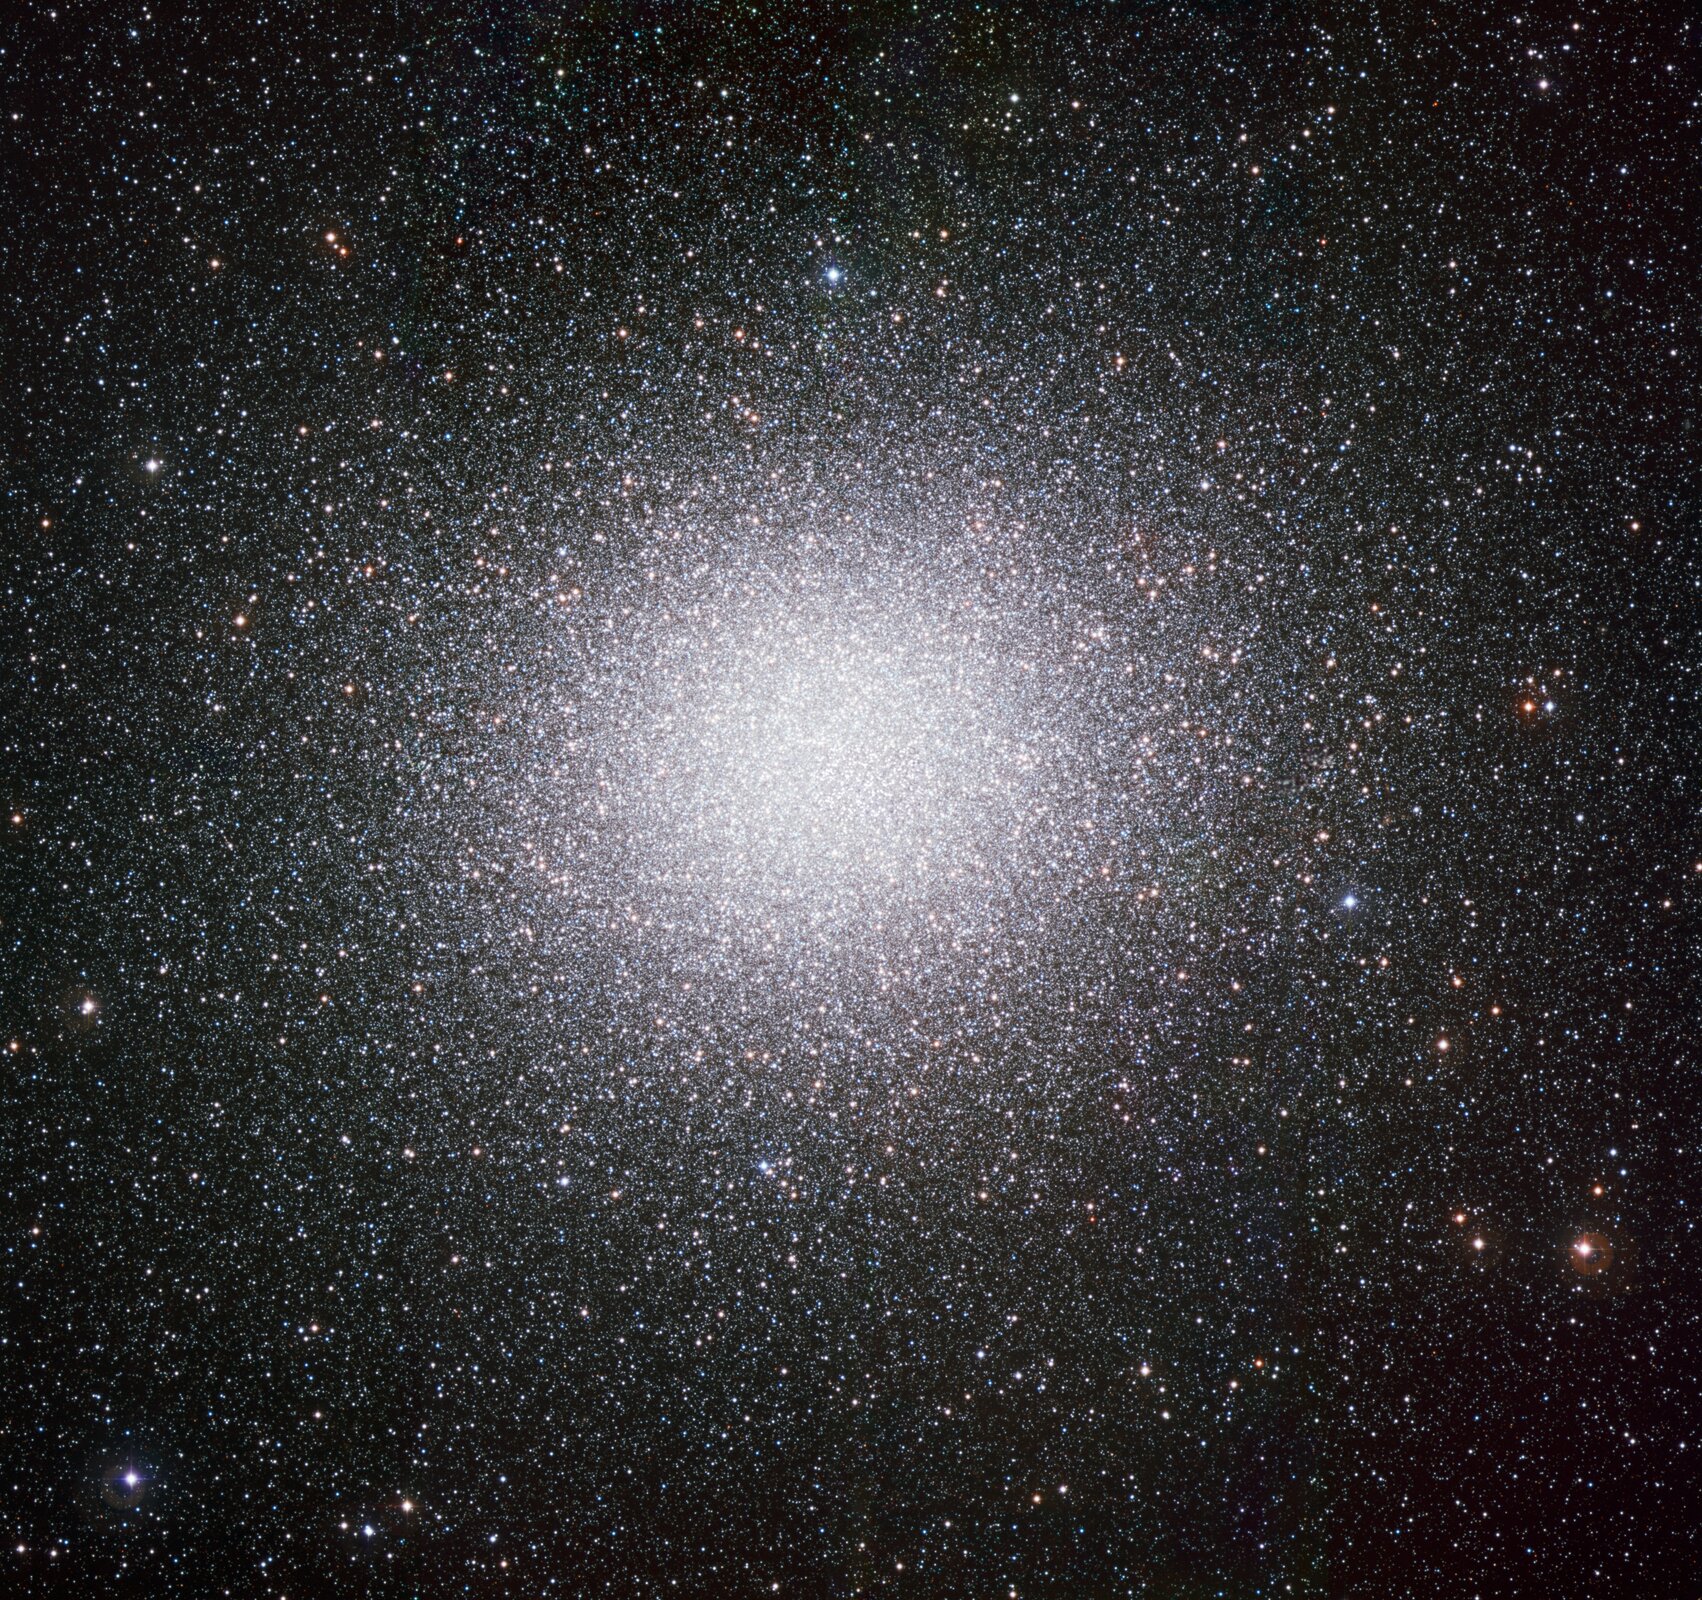 Grafika przedstawia gromadę gwiazd w gwiazdozbiorze Centaura. Tło czarne. Na grafice widoczne mnóstwo białych, jasnożółtych, jasnopomarańczowych i jasnobłękitnych drobnych punktów. Wypełniają całą grafikę. Na środku ogromne skupiska punktów, które często nachodzą na siebie, tworząc duży, jasny punkt.